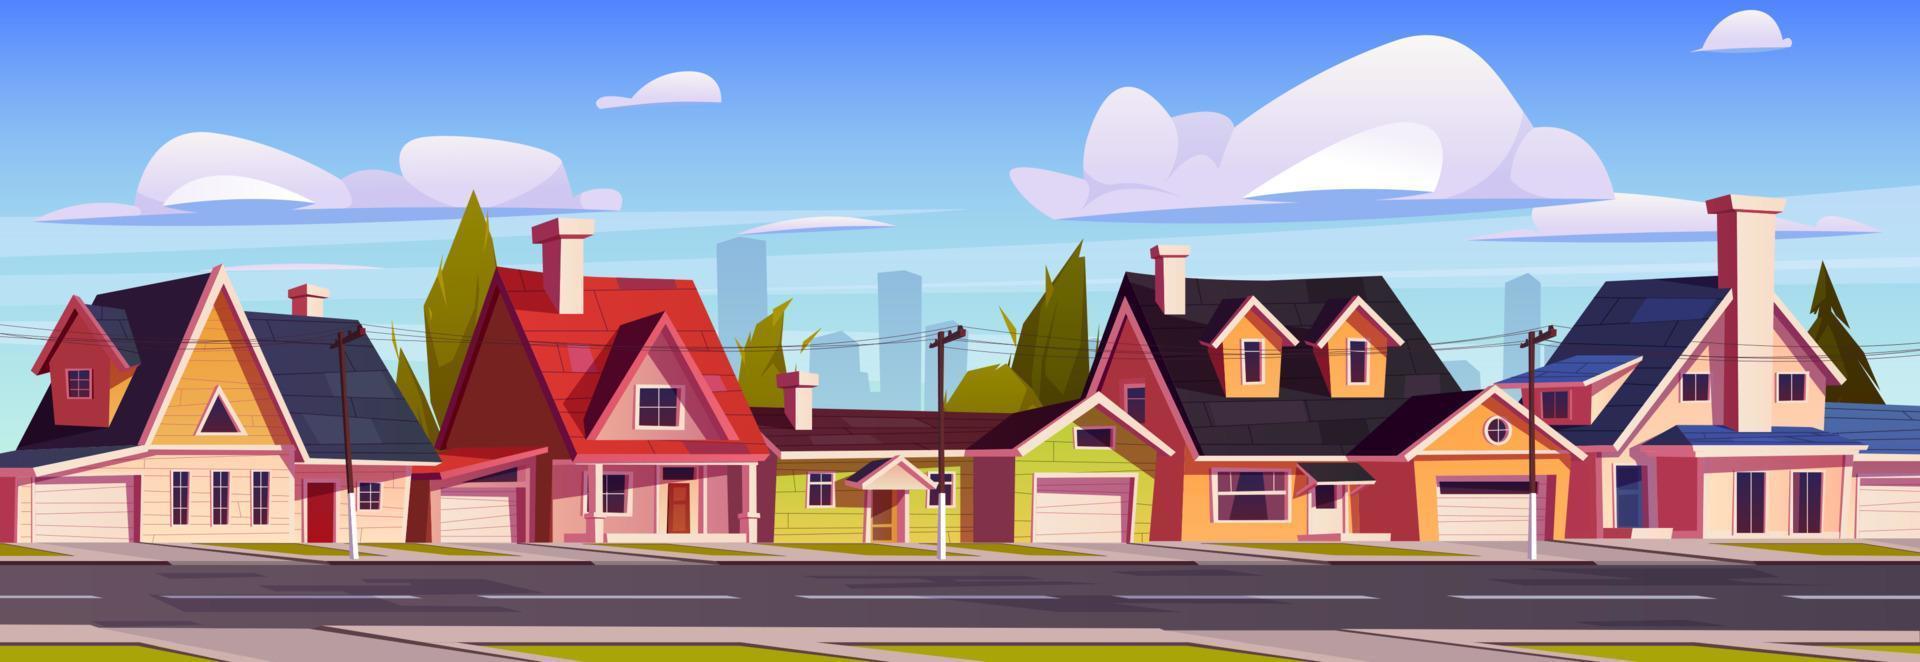 casas suburbanas, rua suburbana com edifícios vetor